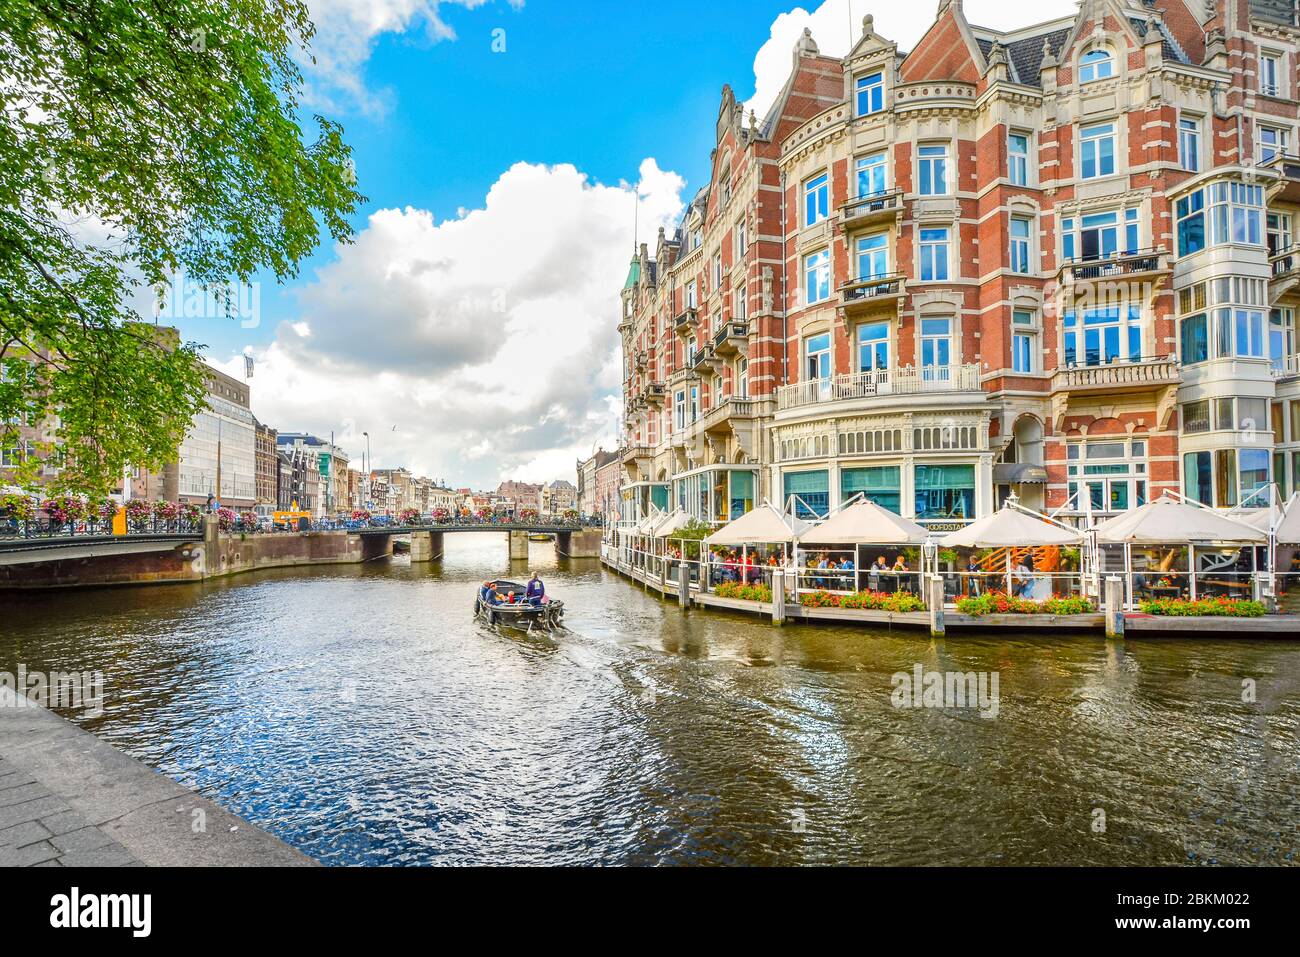 Una barca scivola passato a waterfront hotel e il cafe verso un ponte su uno dei canali principali della cittã , vicino al quartiere dei musei di Amsterdam, Paesi Bassi. Foto Stock